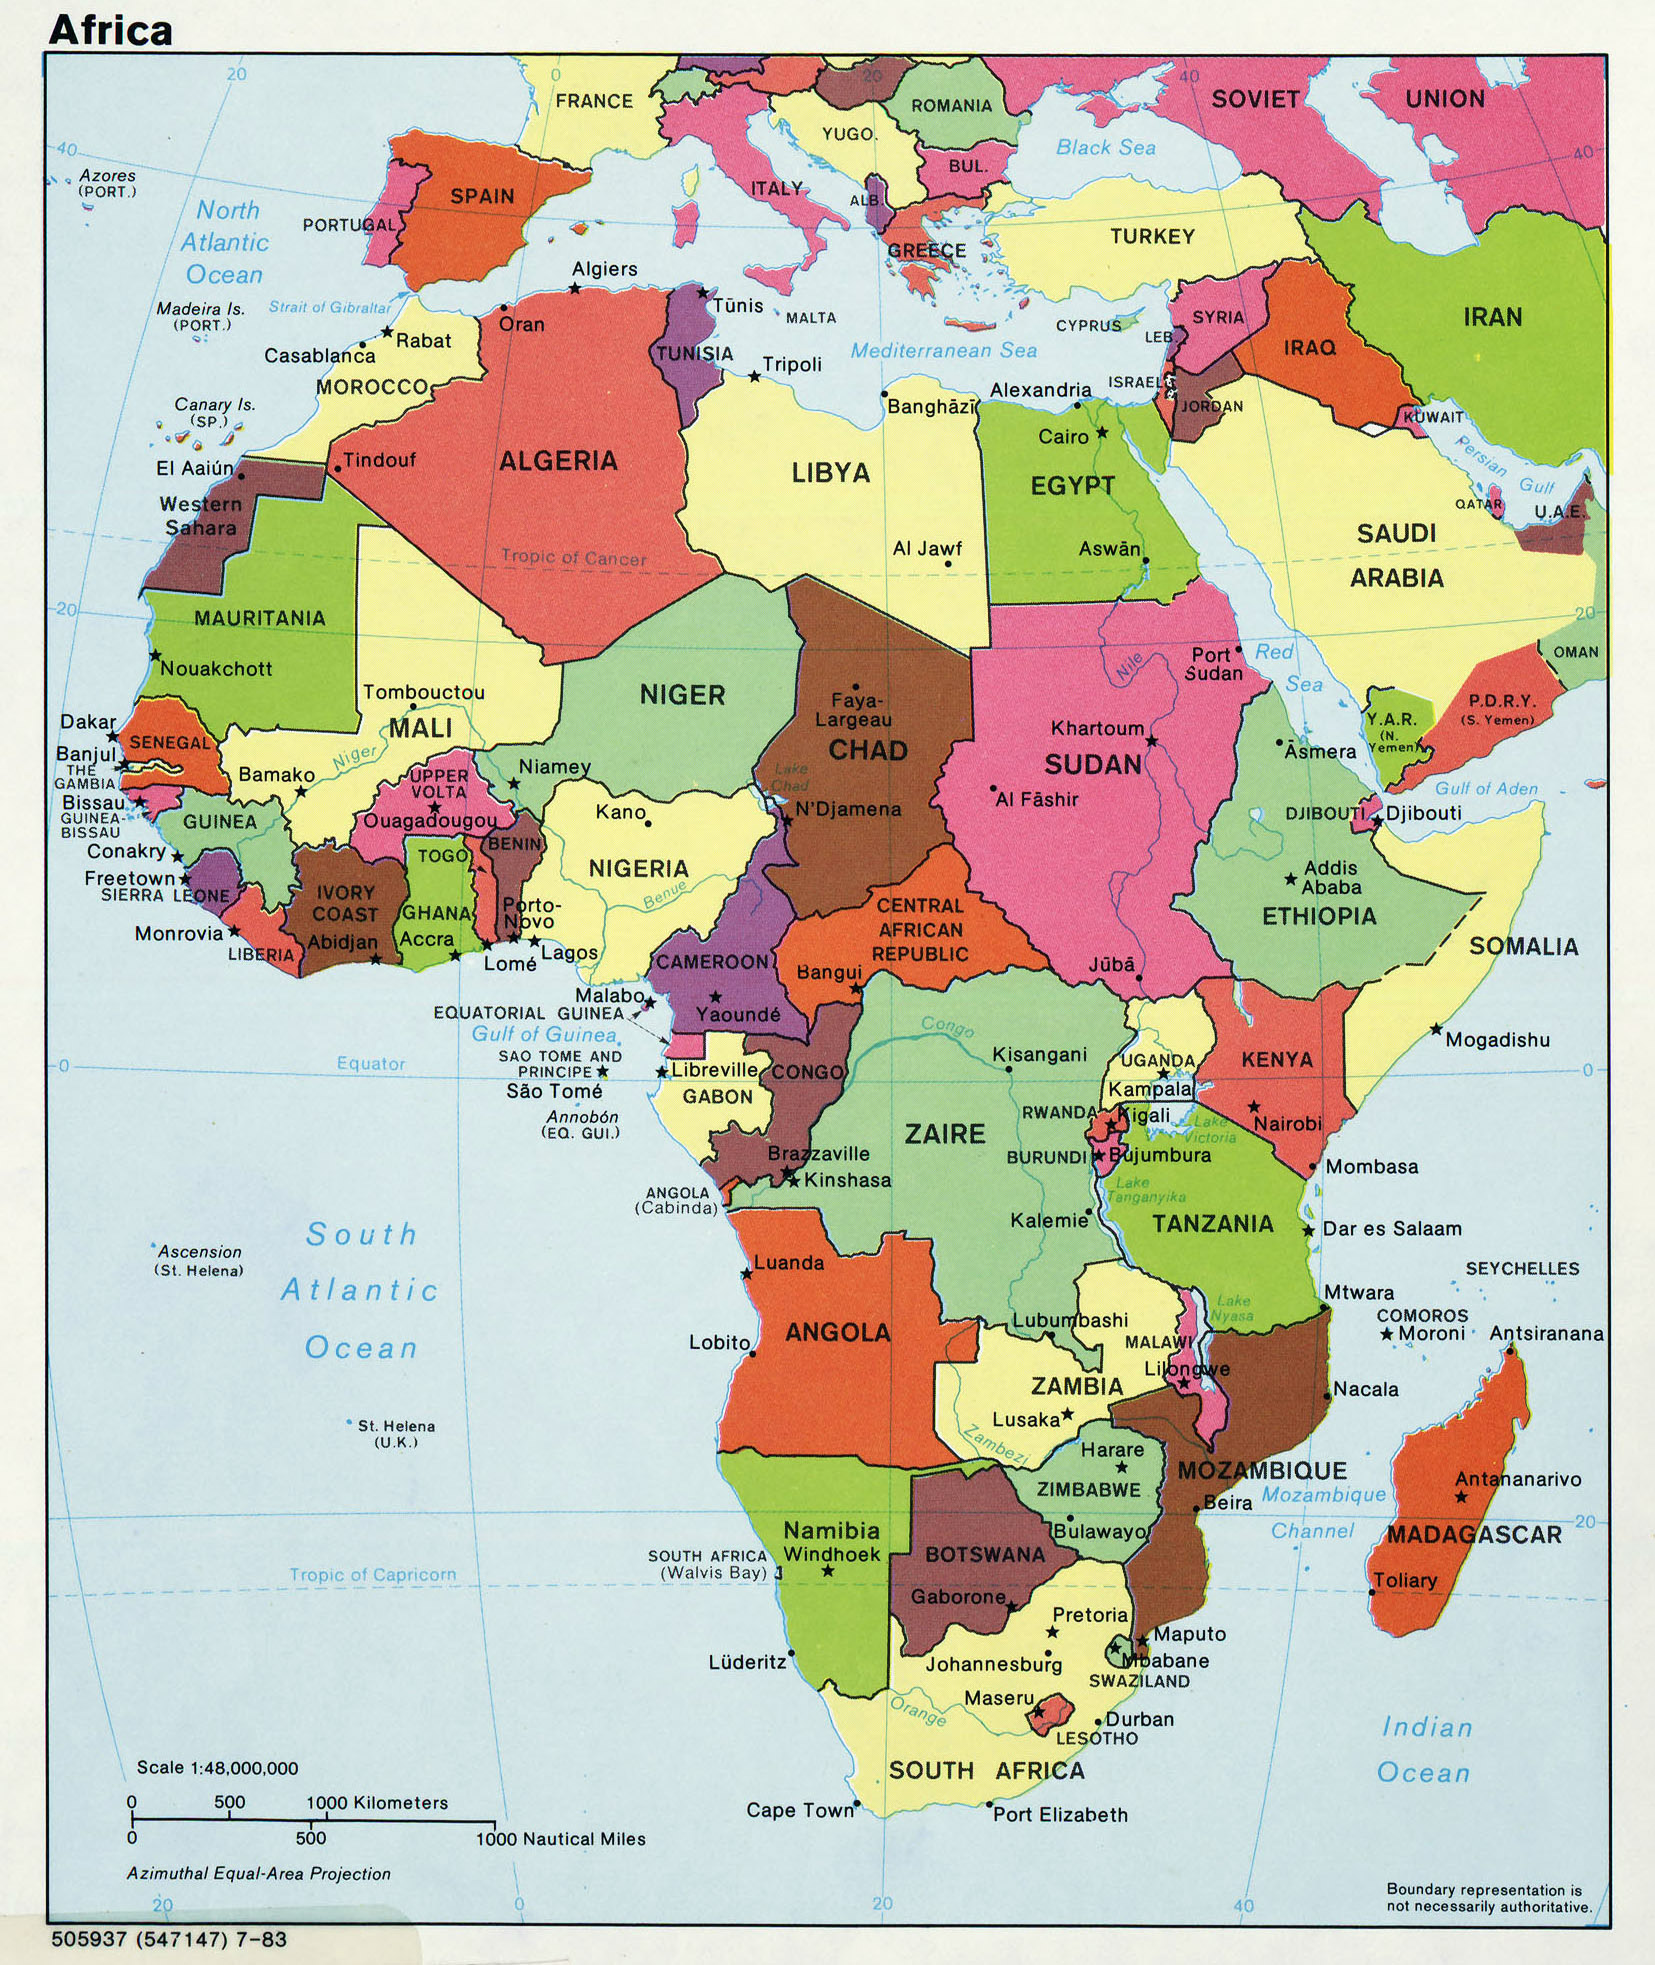 Sintético 95 Foto Mapa De Africa Con Los Paises Lleno 4352